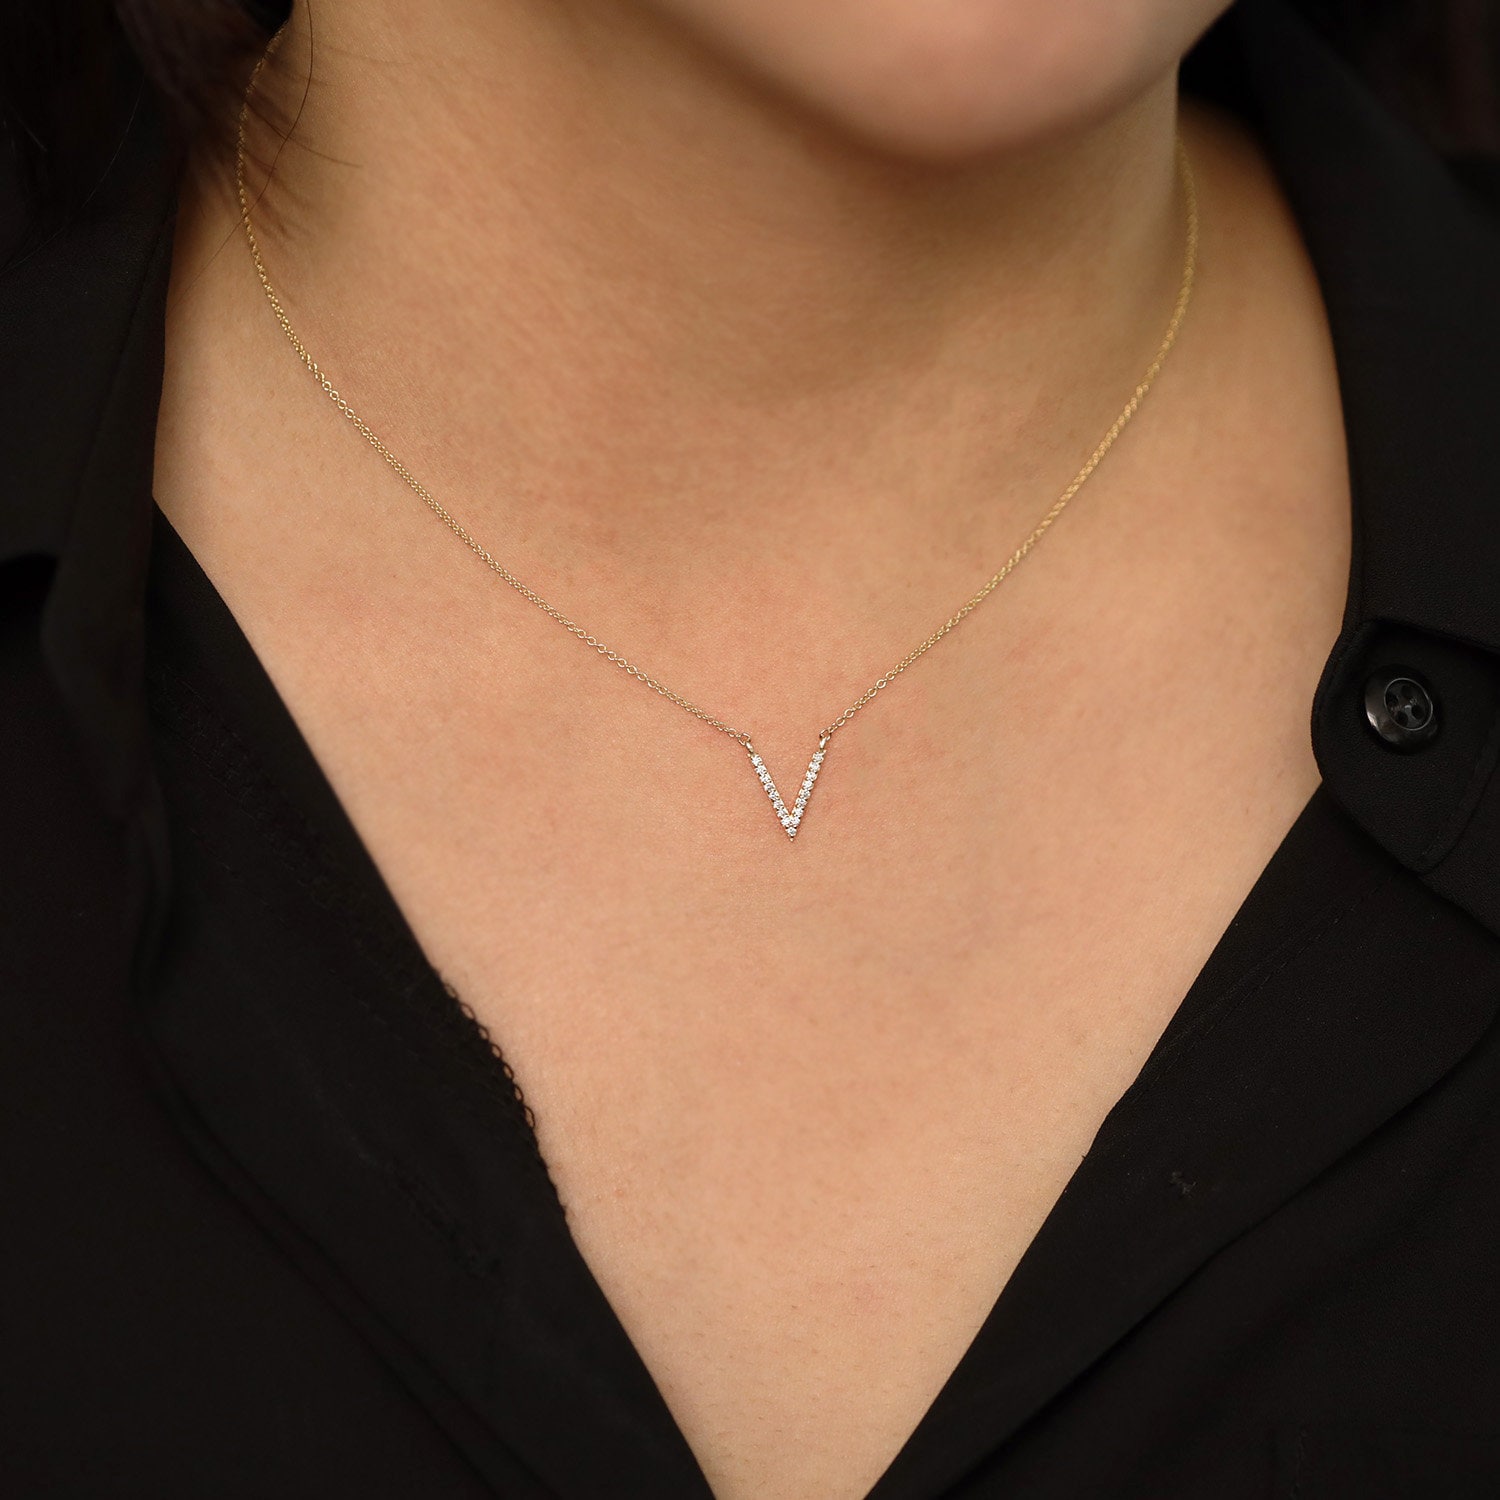 Diamond Necklace, Diamond V Pendant Necklace, Minimalist 14K Solid Gold Necklace, V Pendant Minimalist Diamond Necklace, Unique Necklace